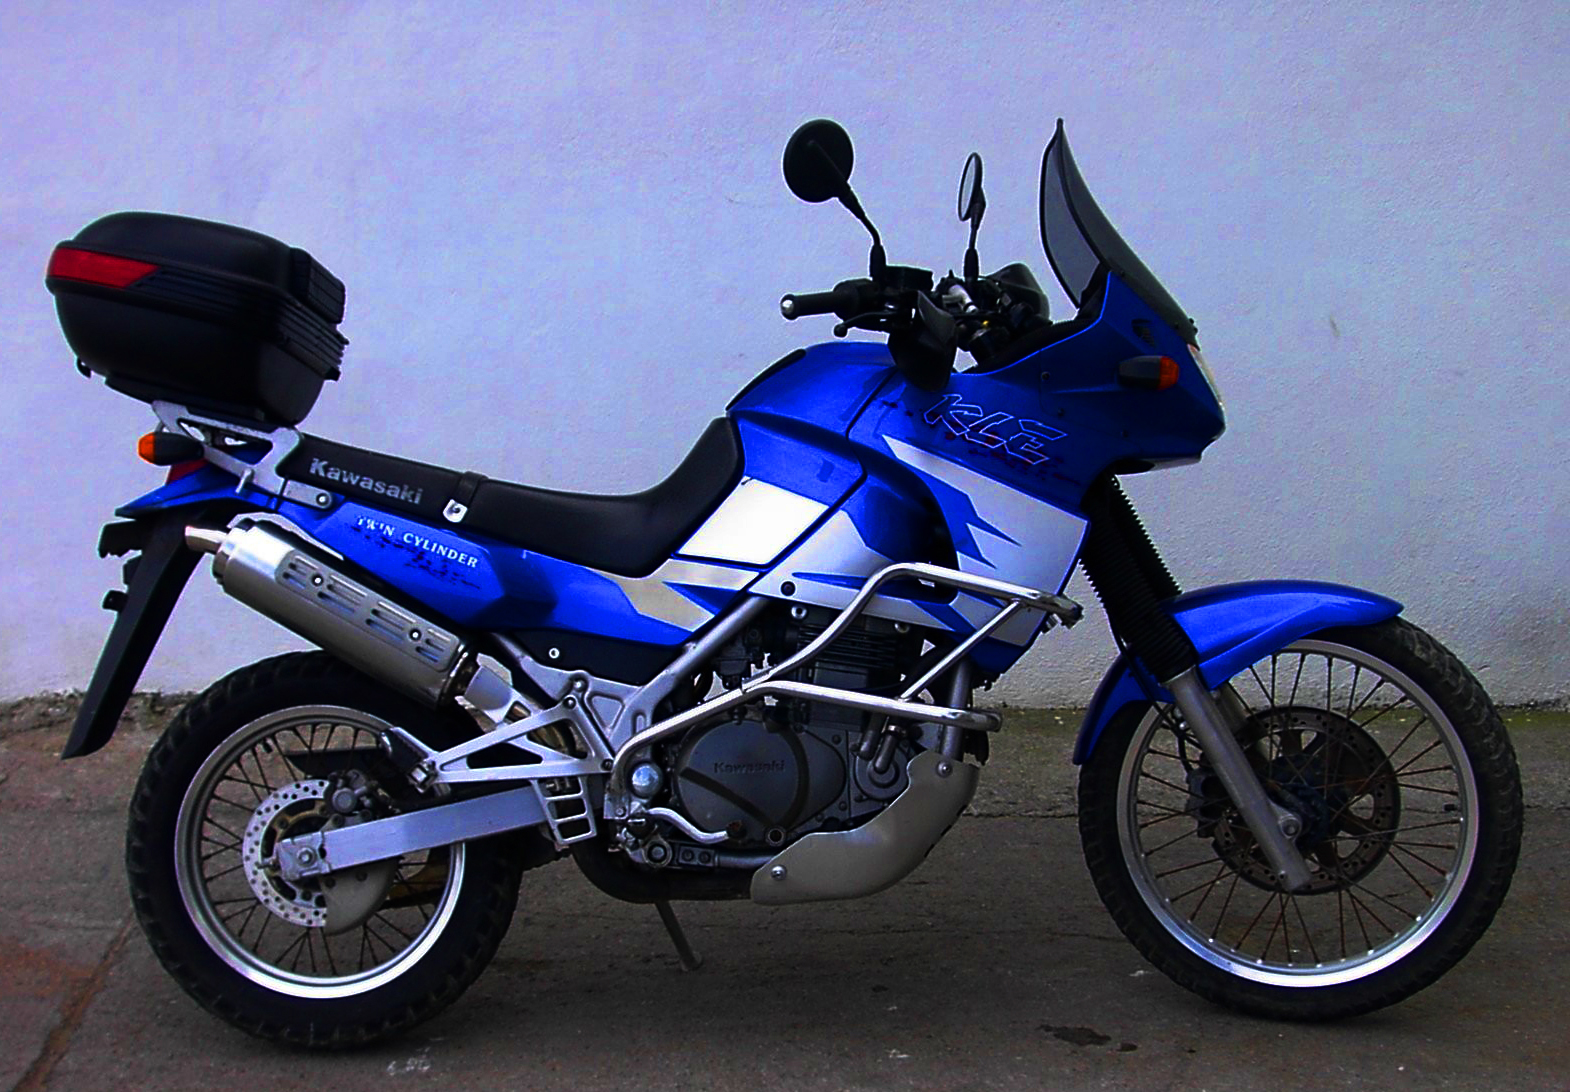 Kawasaki KLE500 | Motorcycle Wiki Fandom